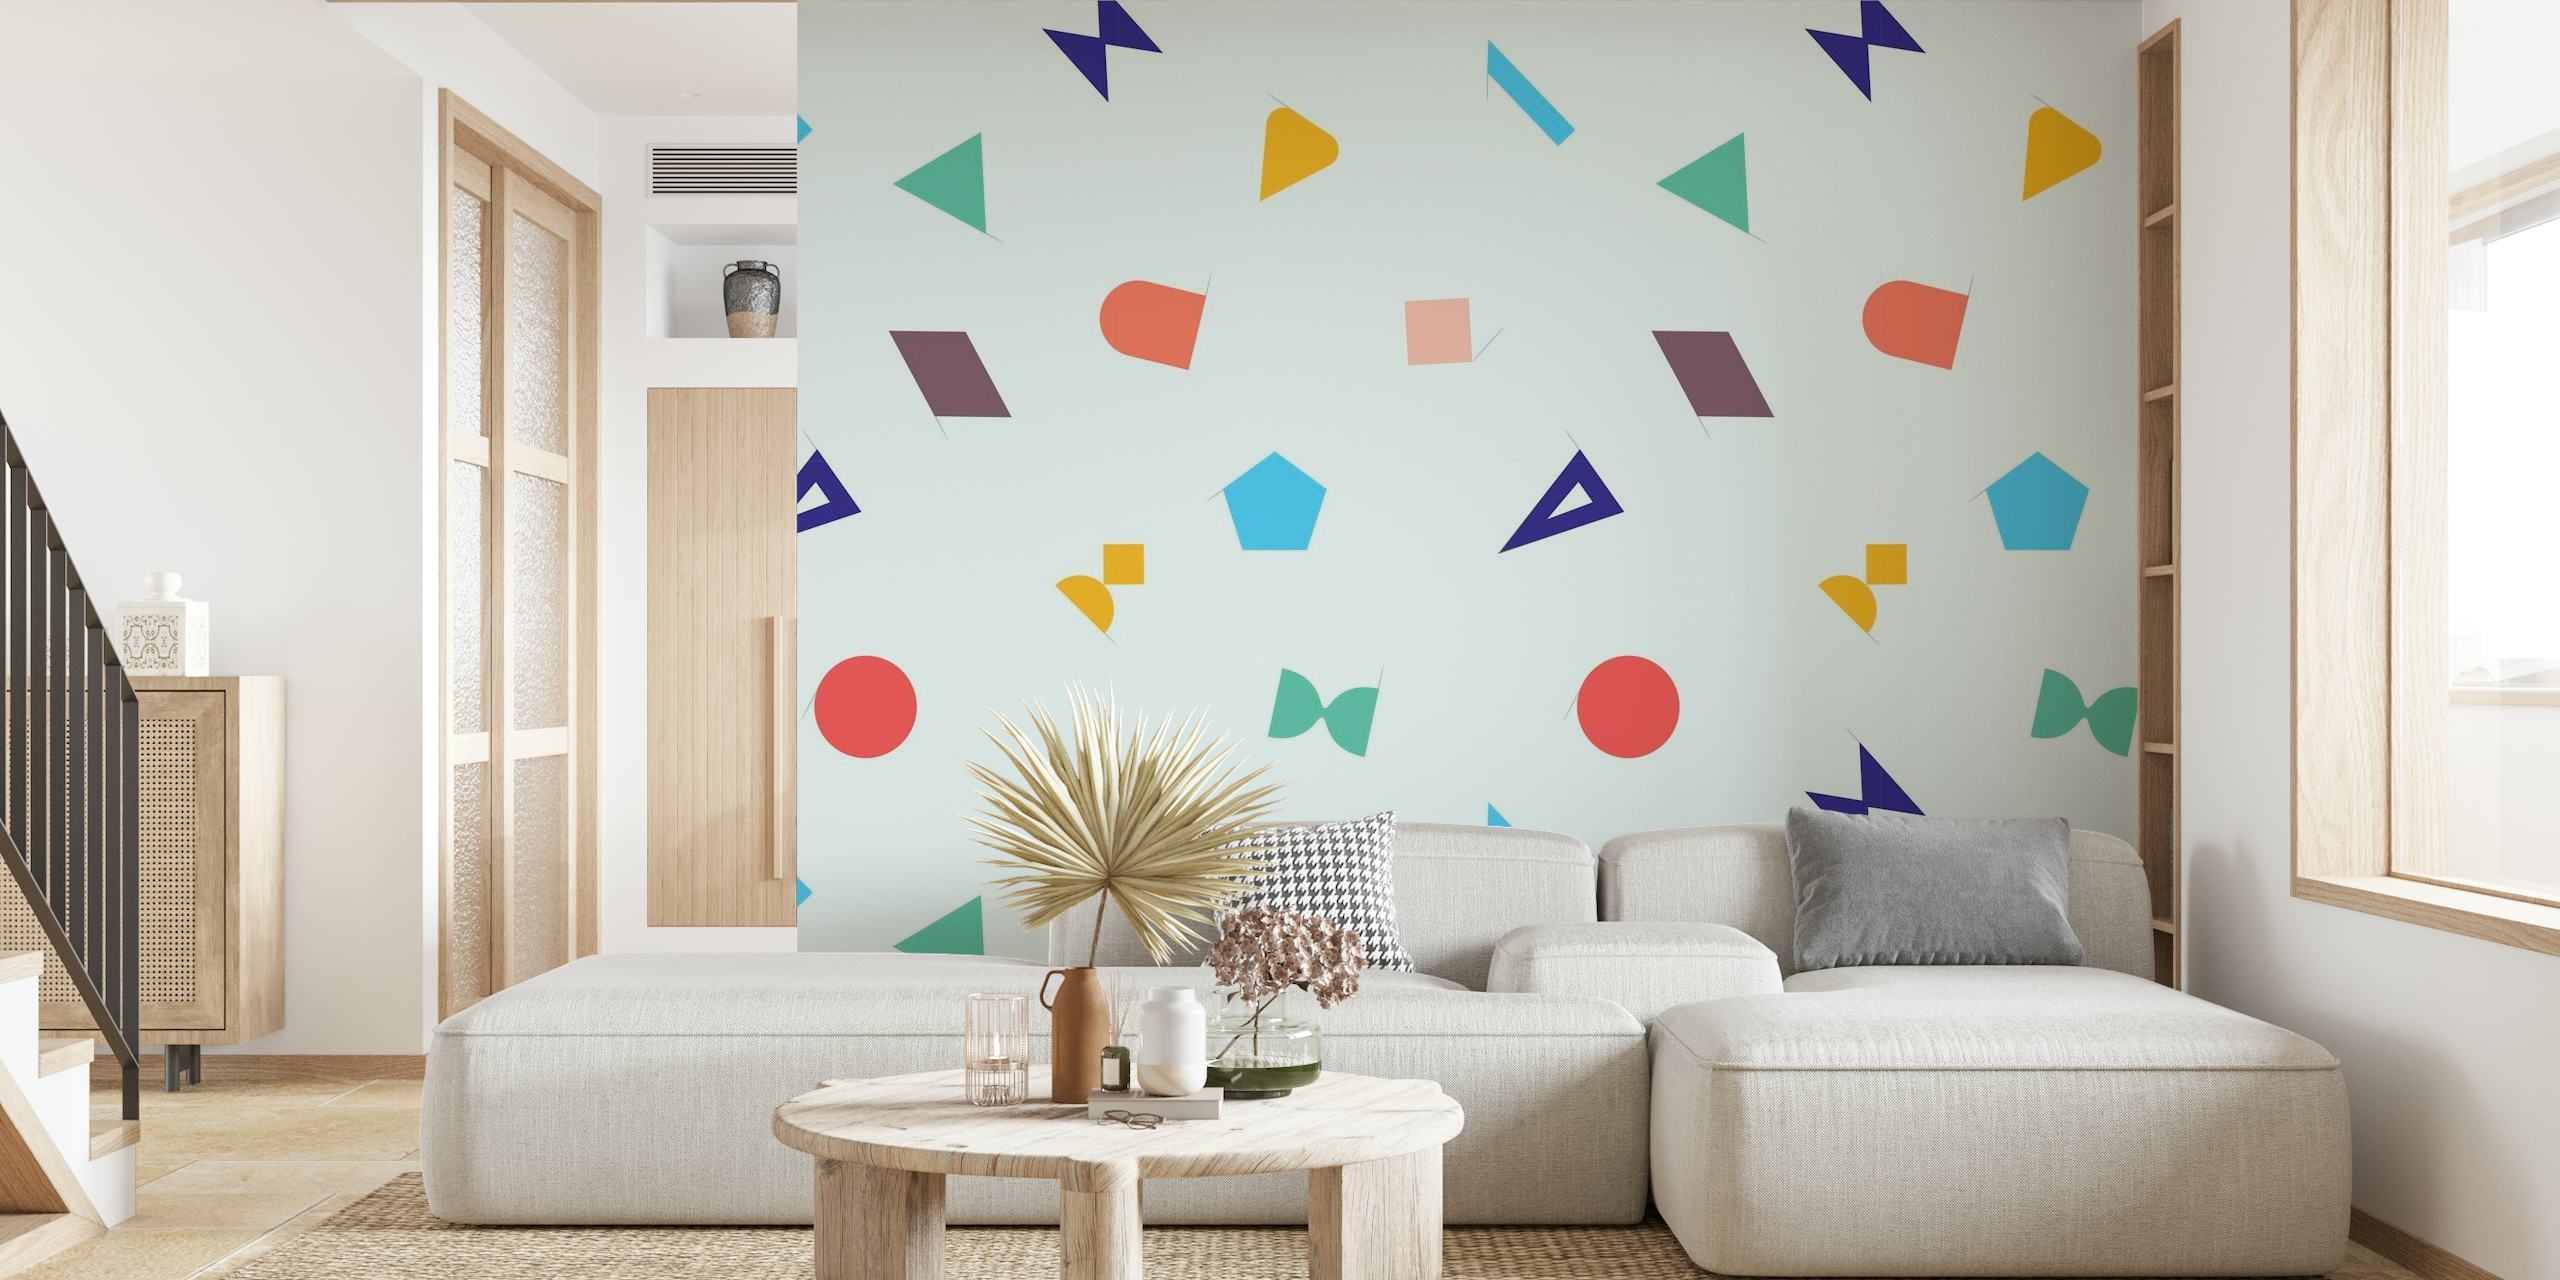 Geo II apstraktni geometrijski oblici zidni mural pastelnih boja